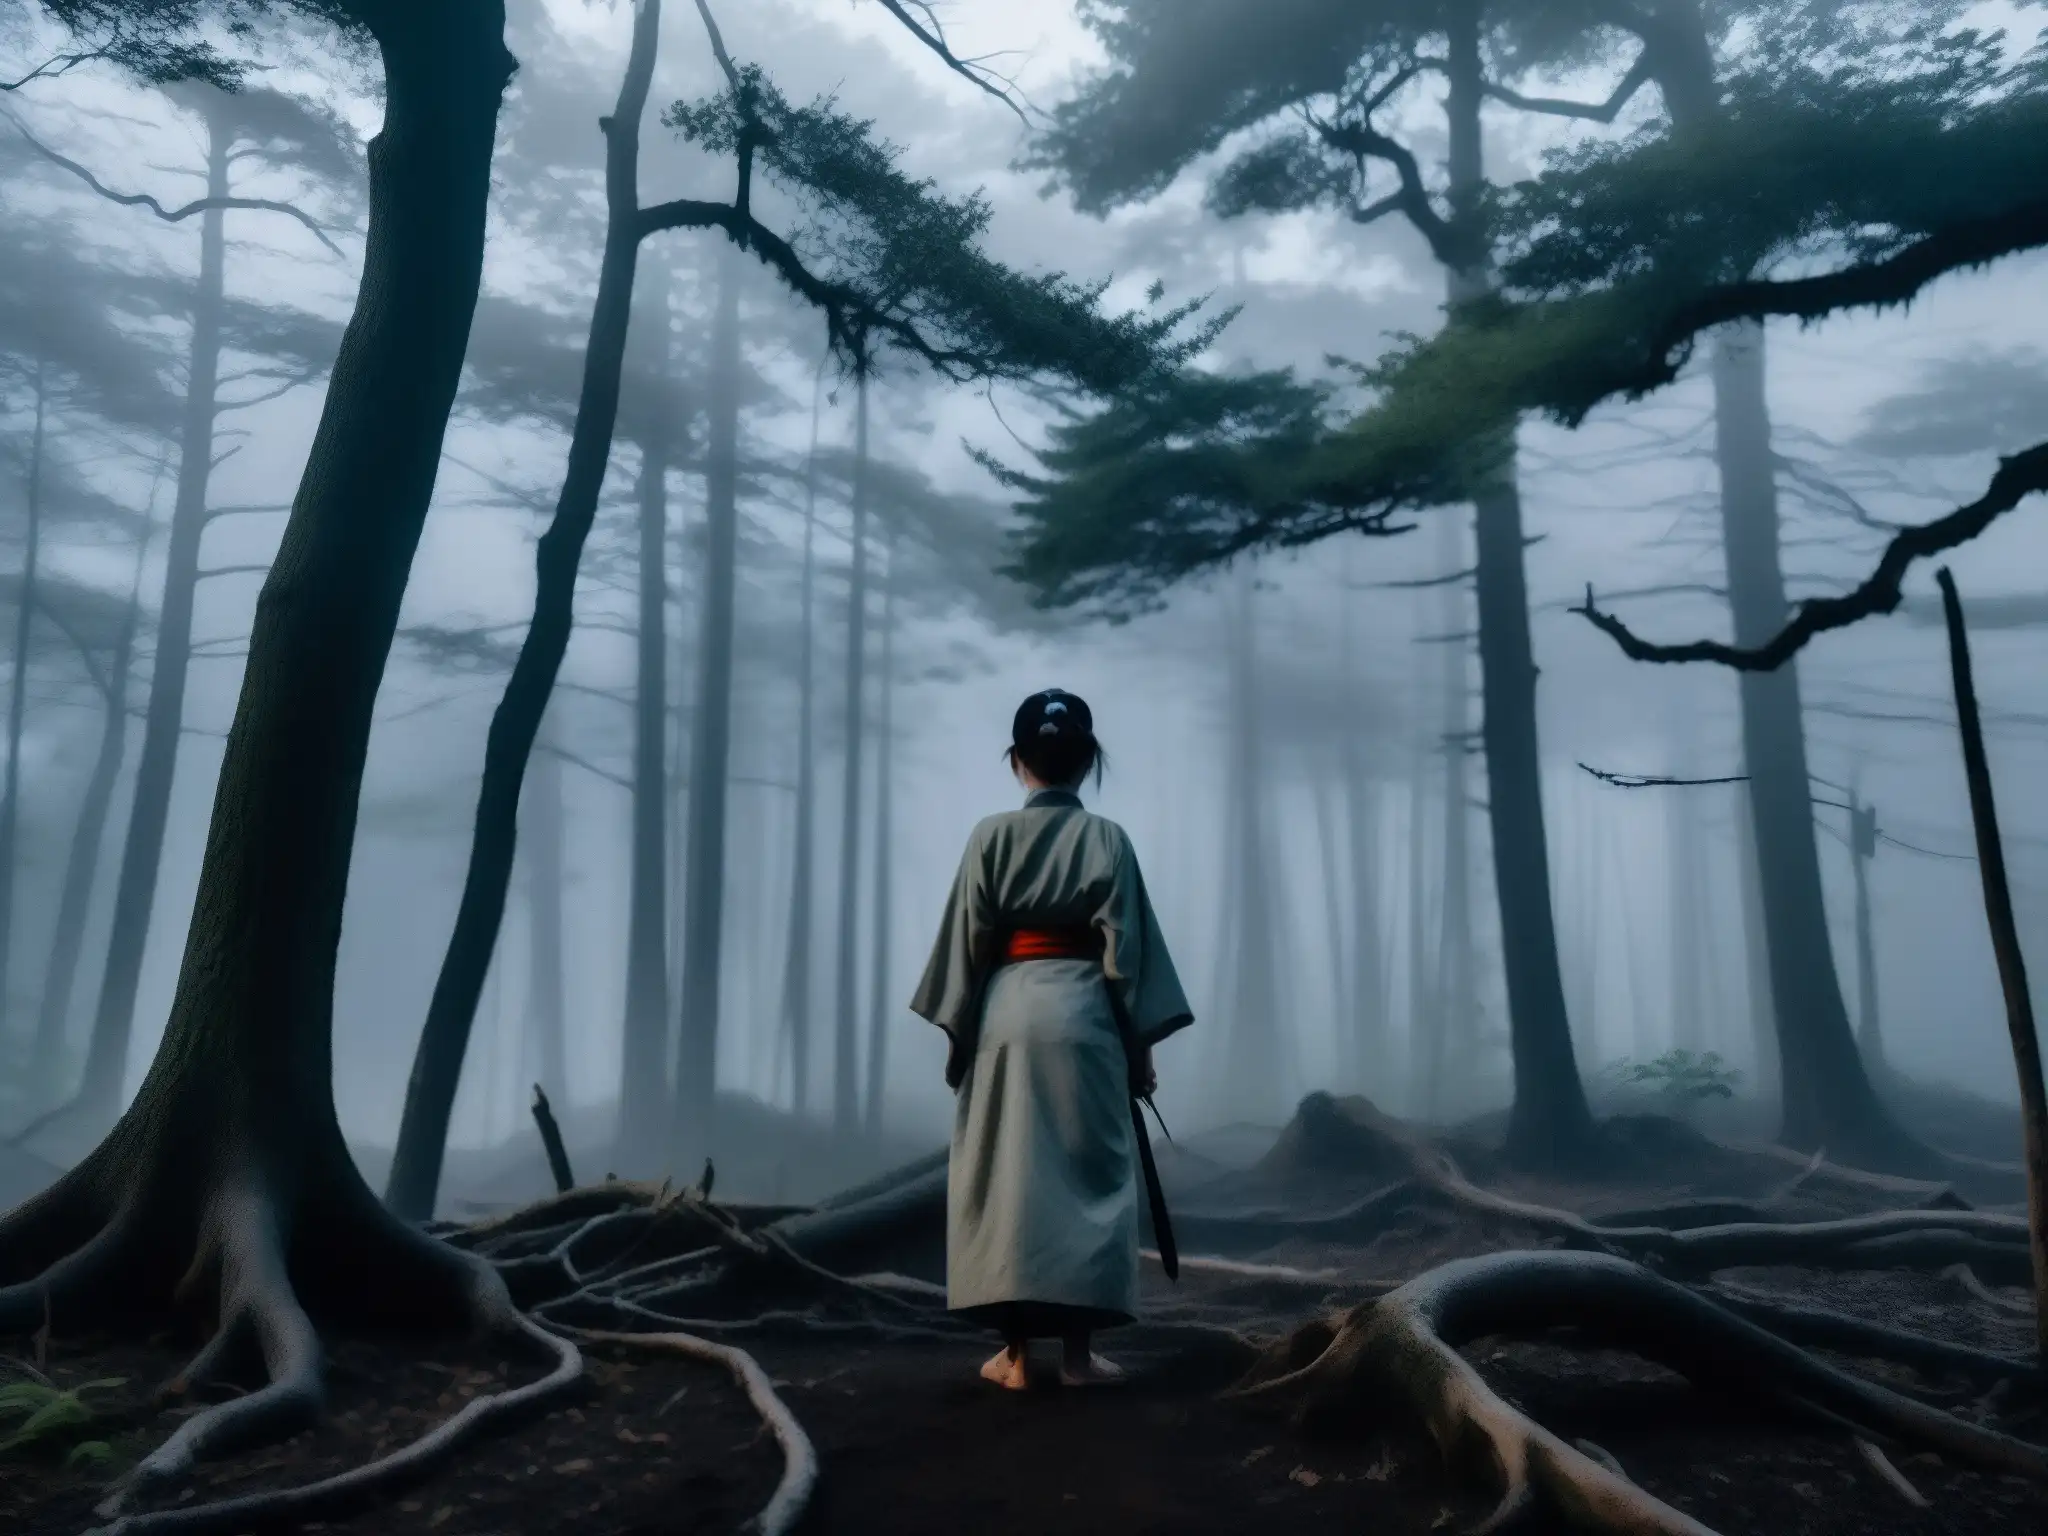 Imagen fantasmal de la Kushisake Onna en un bosque neblinoso al anochecer, impactando la moda y estética japonesa